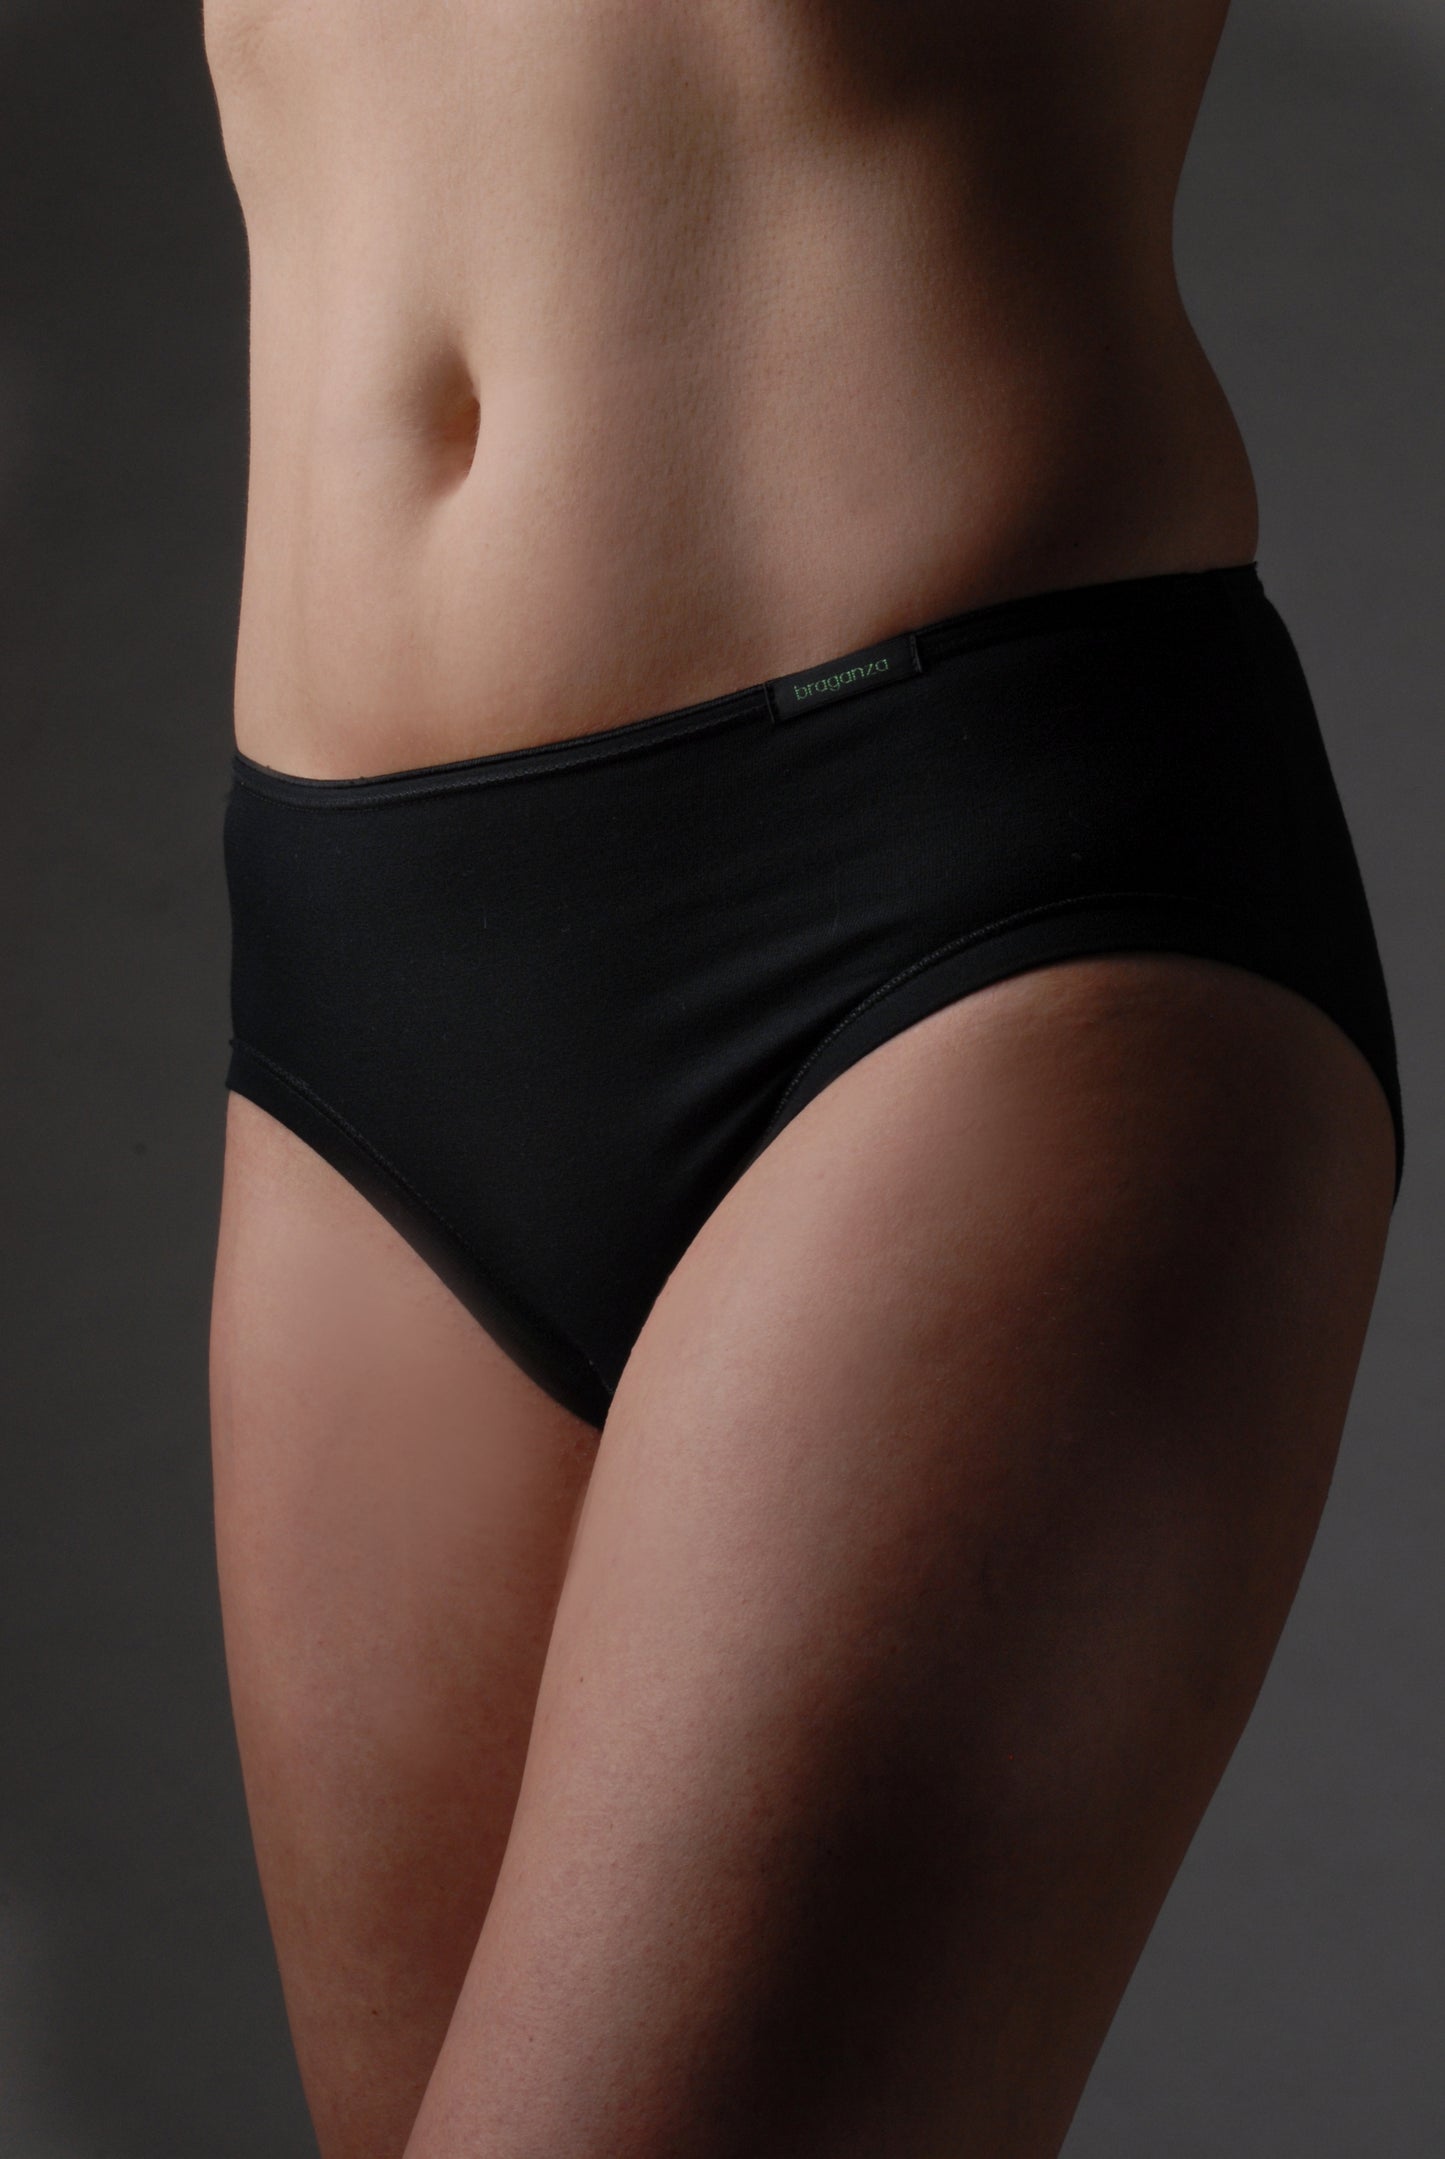 Der sportliche Damen Slip ist ideal für alle Sportarten, er schützt und atmet und ersetzt die Anwendung von Slipeinlagen